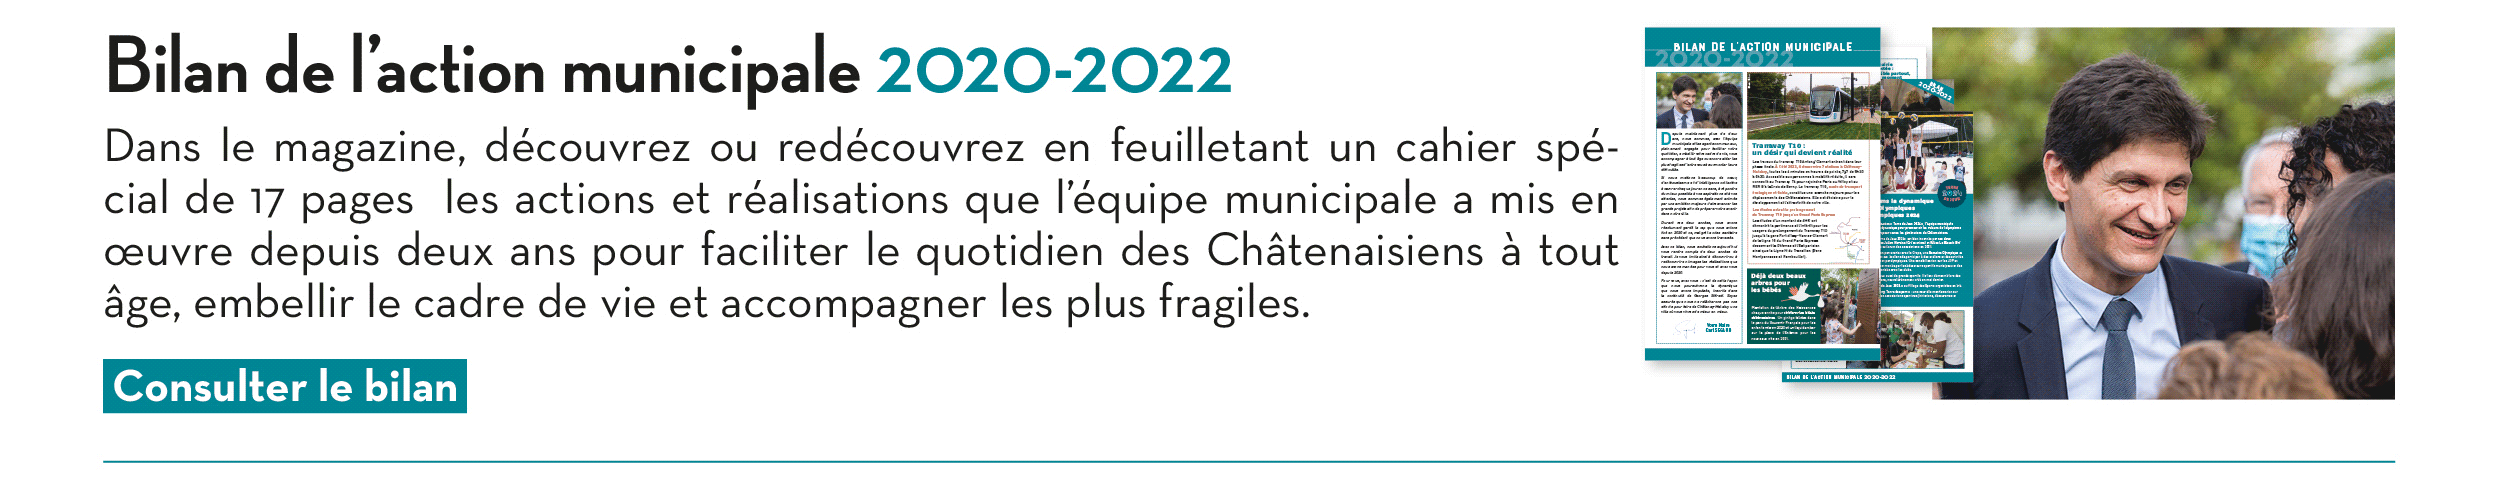 Bilan de l’action municipale 2020-2022